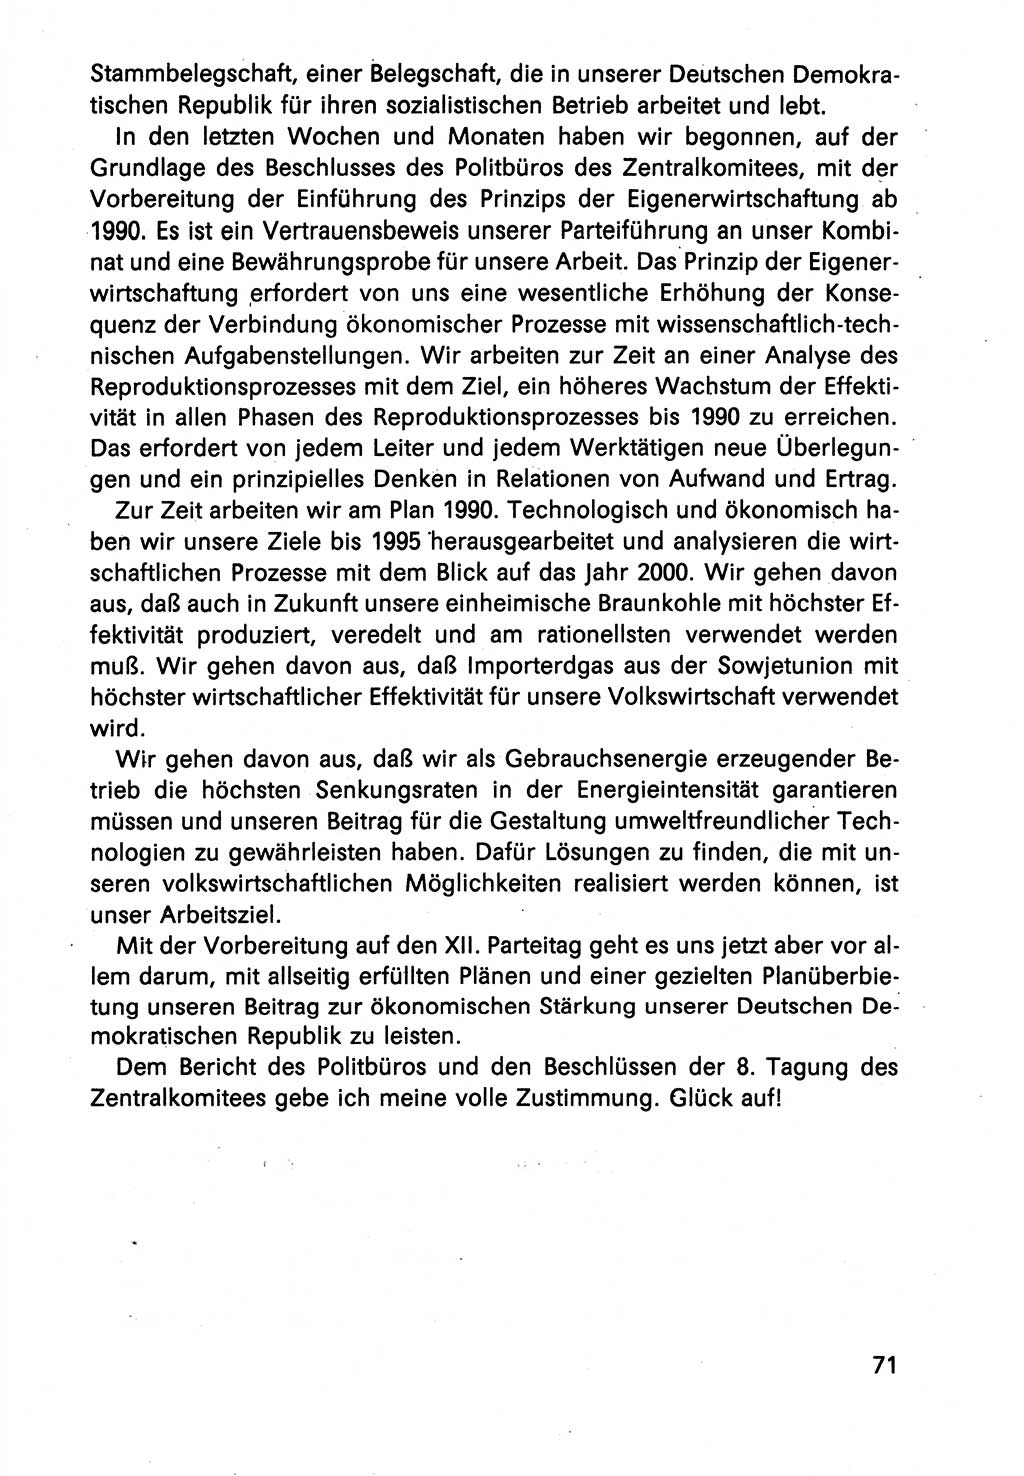 Diskussionsreden, 8. Tagung des ZK (Zentralkomitee) der SED (Sozialistische Einheitspartei Deutschlands) [Deutsche Demokratische Republik (DDR)] 1989, Seite 71 (Disk.-Red. 8. Tg. ZK SED DDR 1989, S. 71)